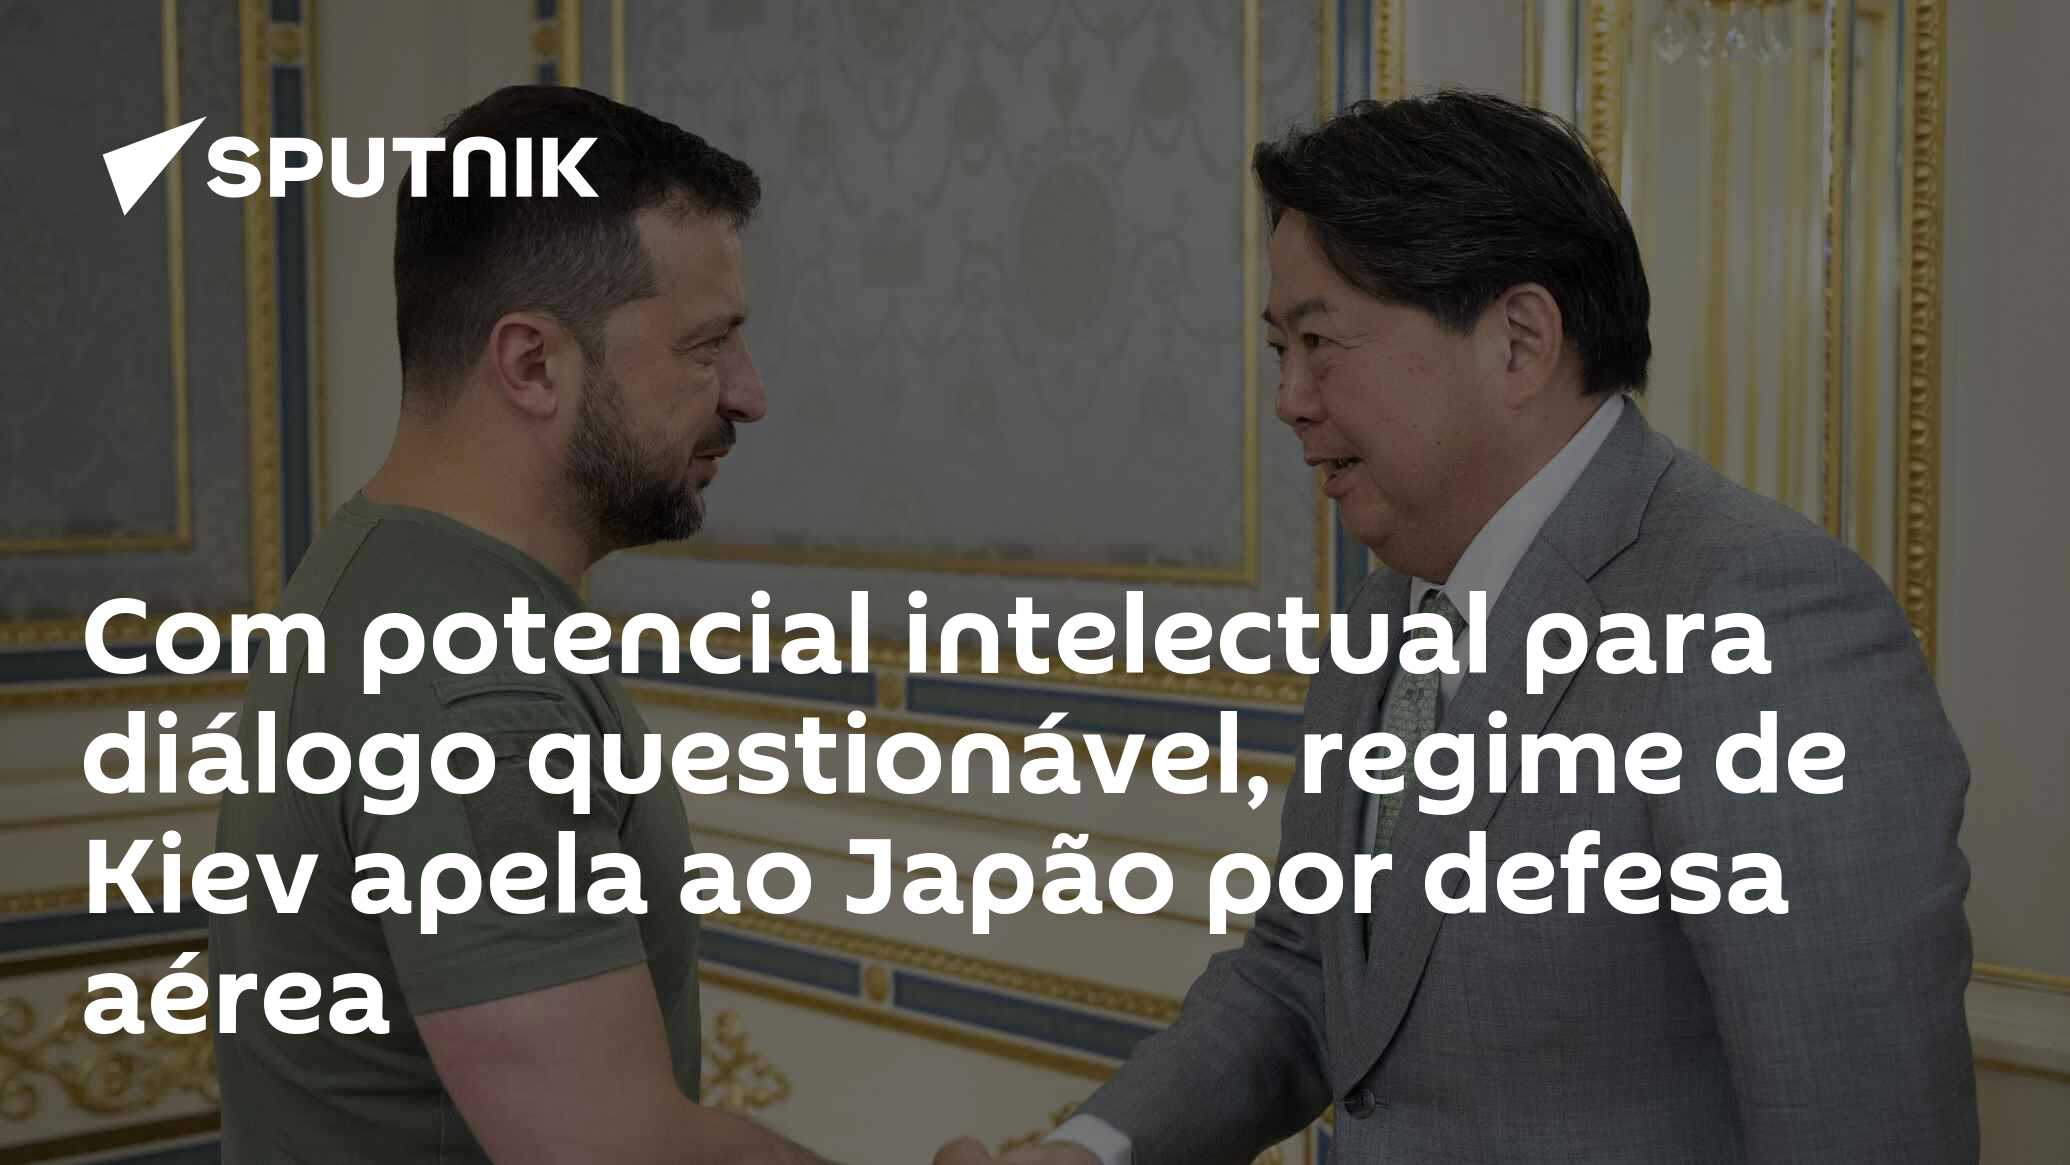 Peak alimenta crise do futebol no Japão e reclama de atitude do Brasil